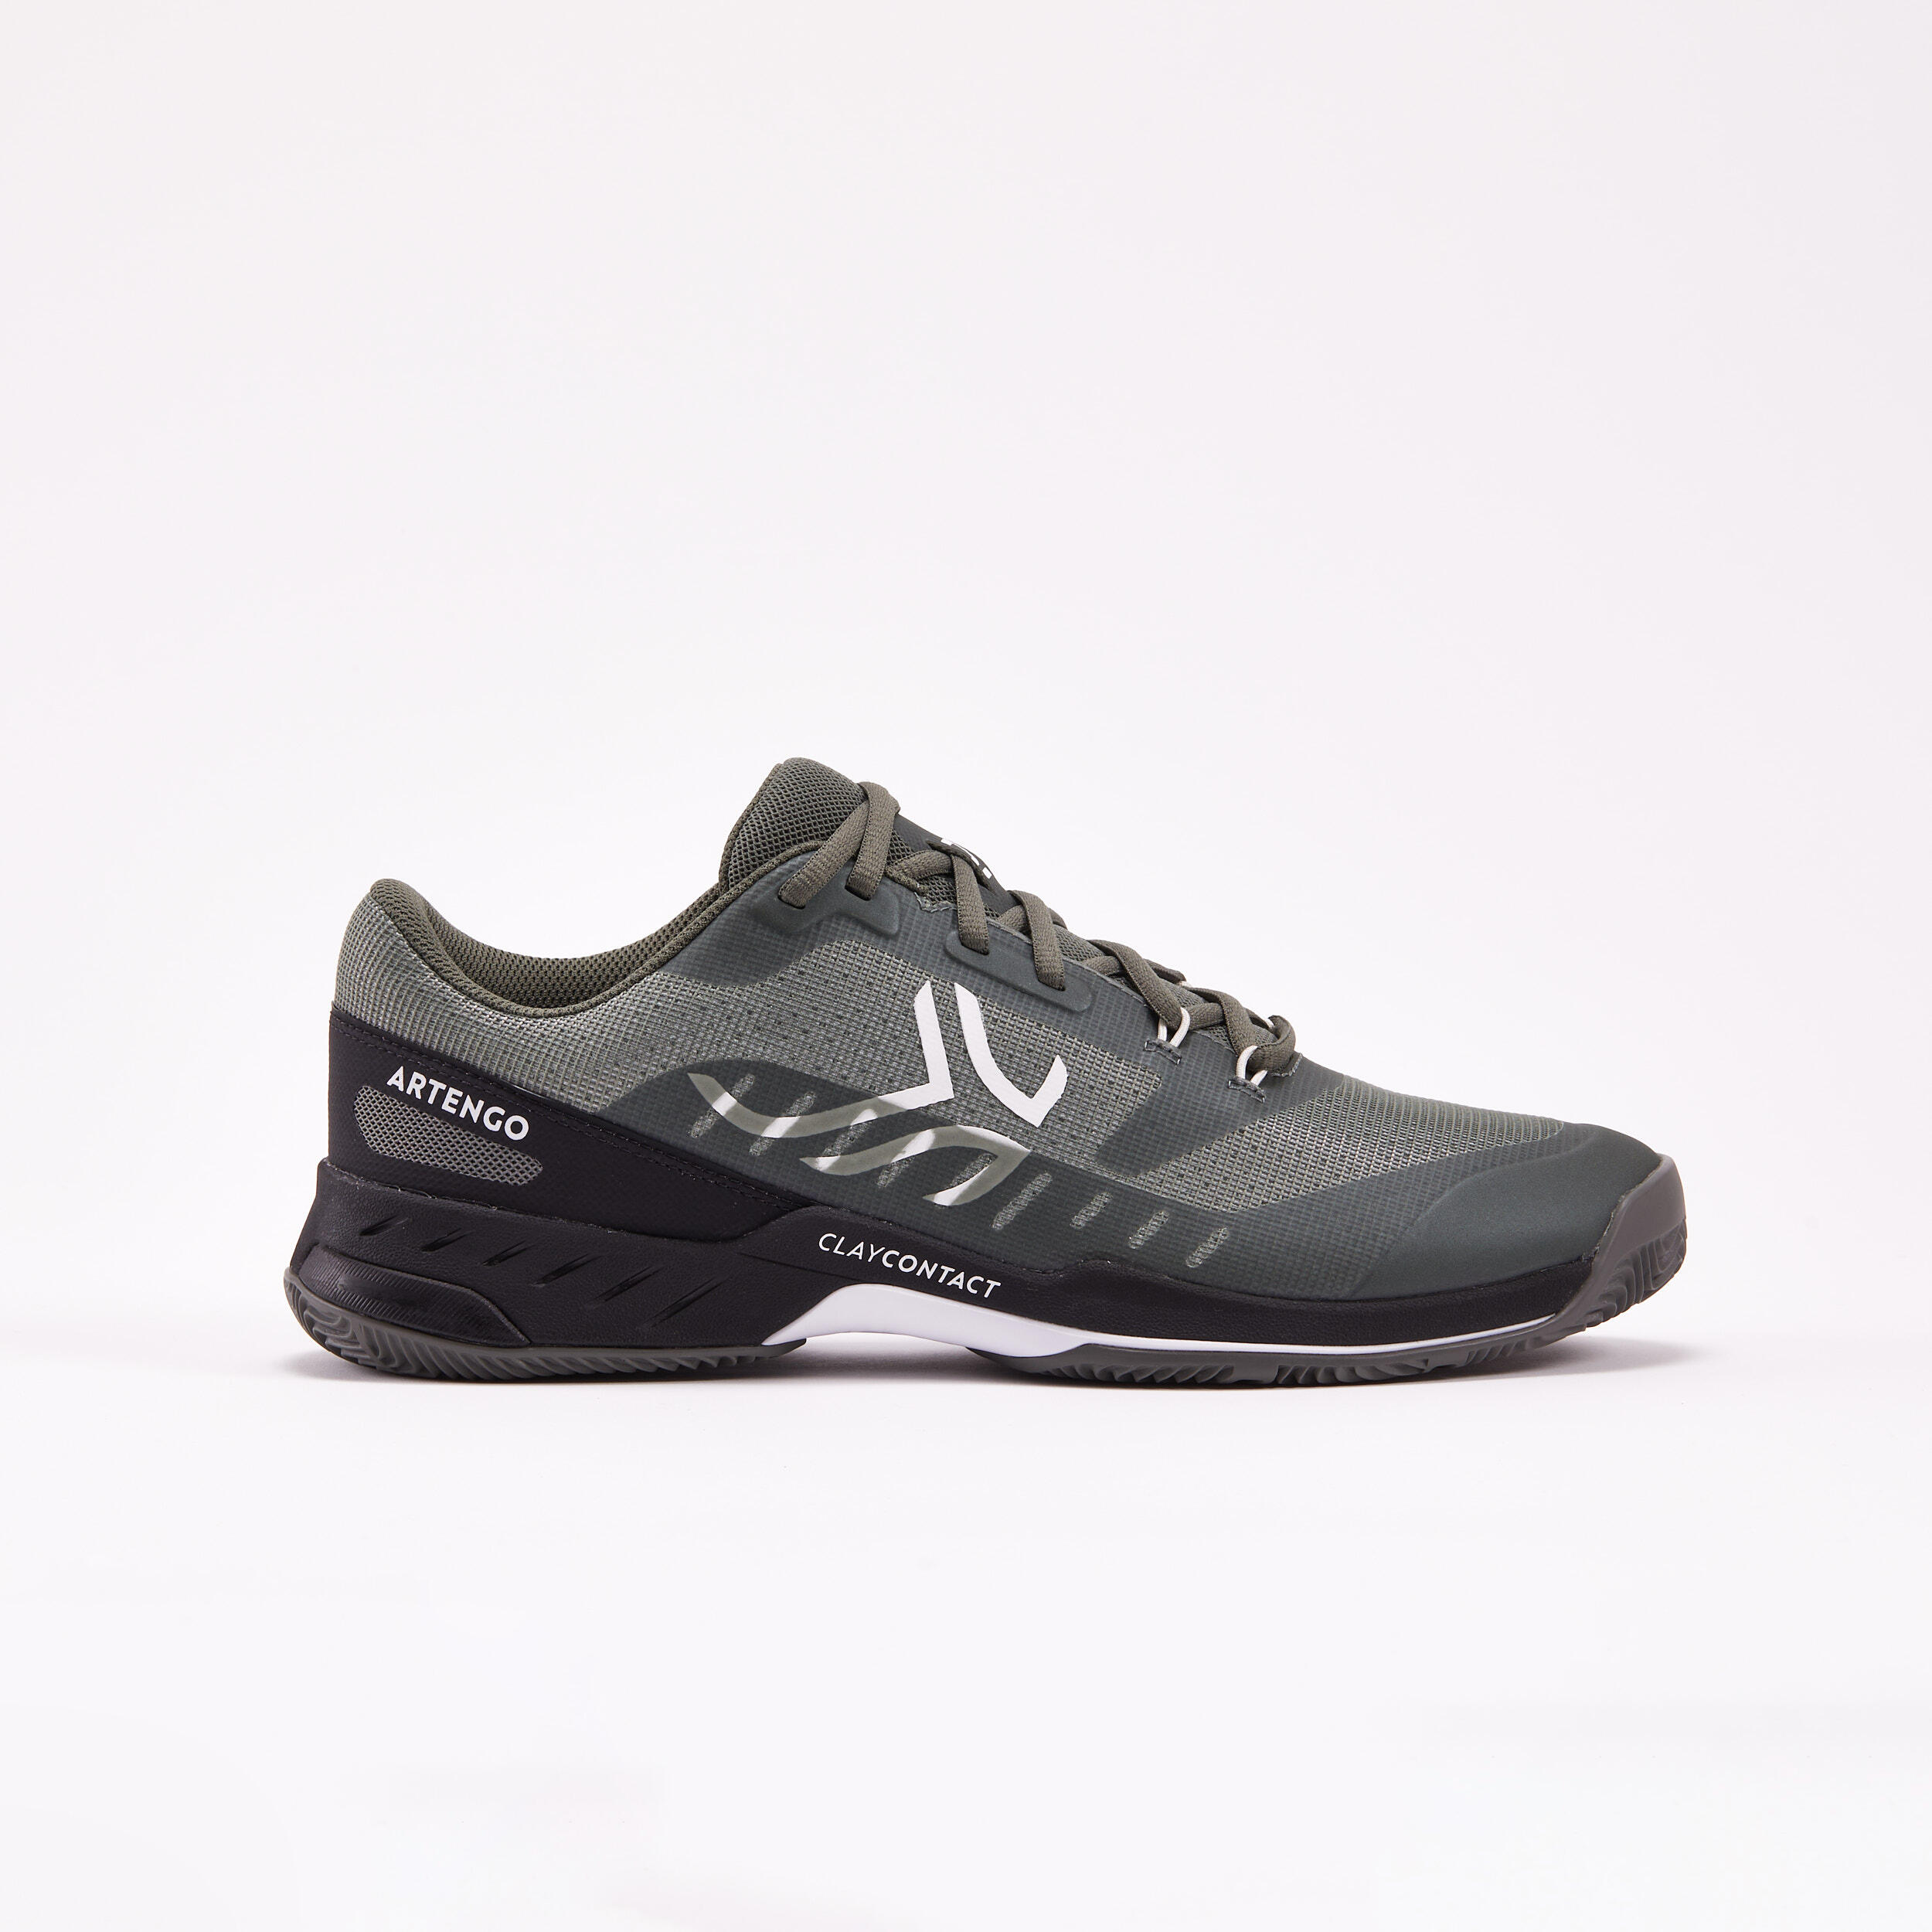 Men's Clay Court Tennis Shoes Fast - Khaki/Black 1/8